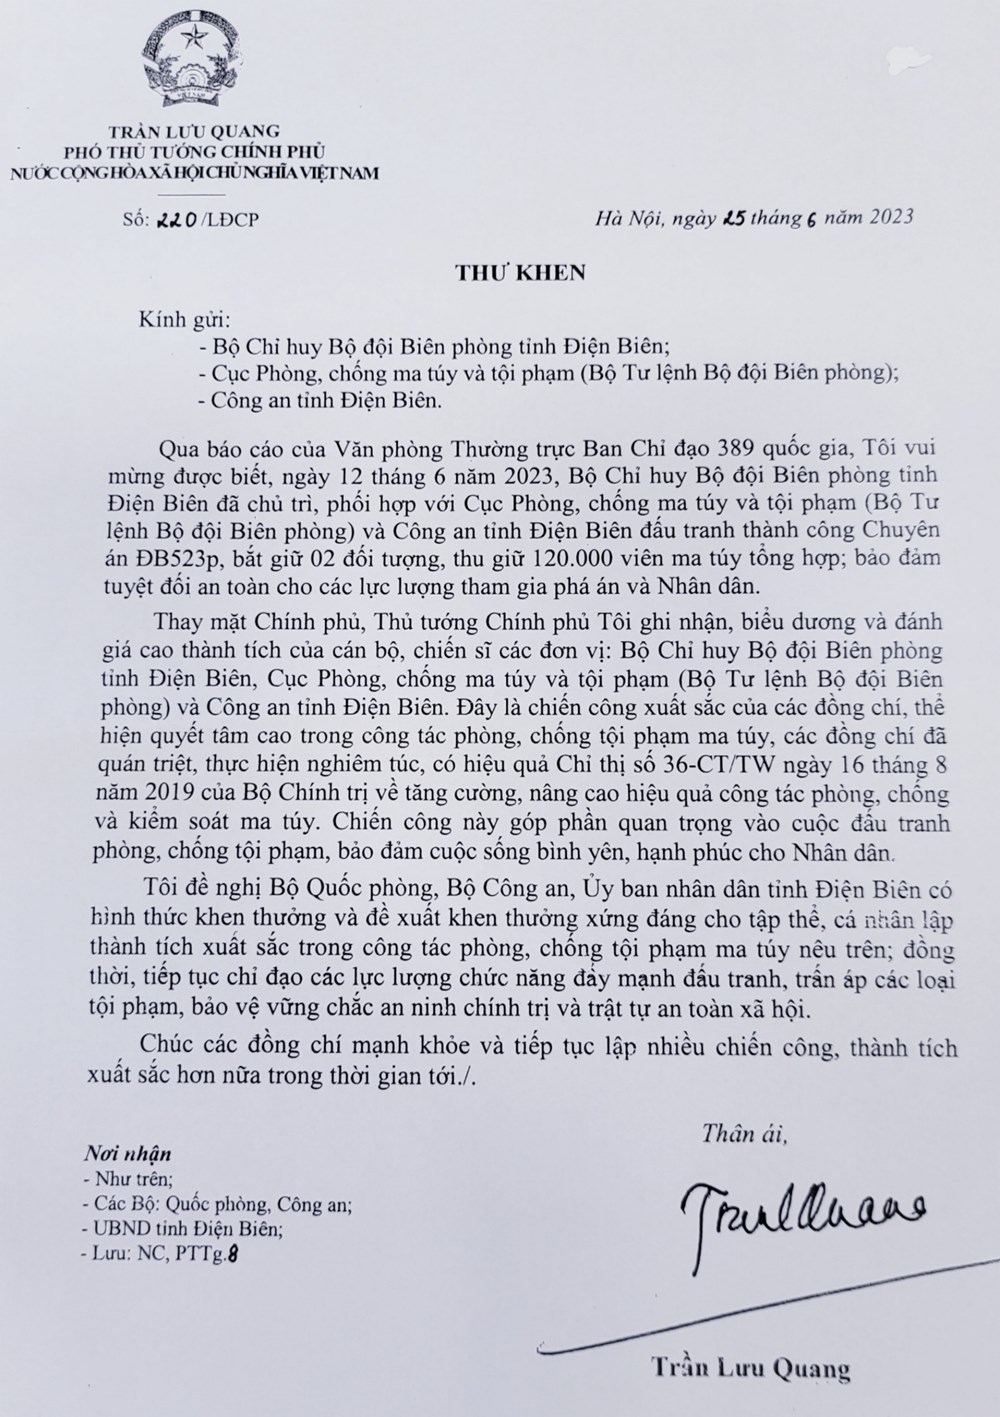 Phó Thủ tướng Chính phủ Trần Lưu Quang gửi thư khen Bộ đội Biên phòng tỉnh Điện Biên, Cục Phòng, chống ma túy và tội phạm Bộ đội Biên phòng và Công an tỉnh Điện Biên - ảnh 1